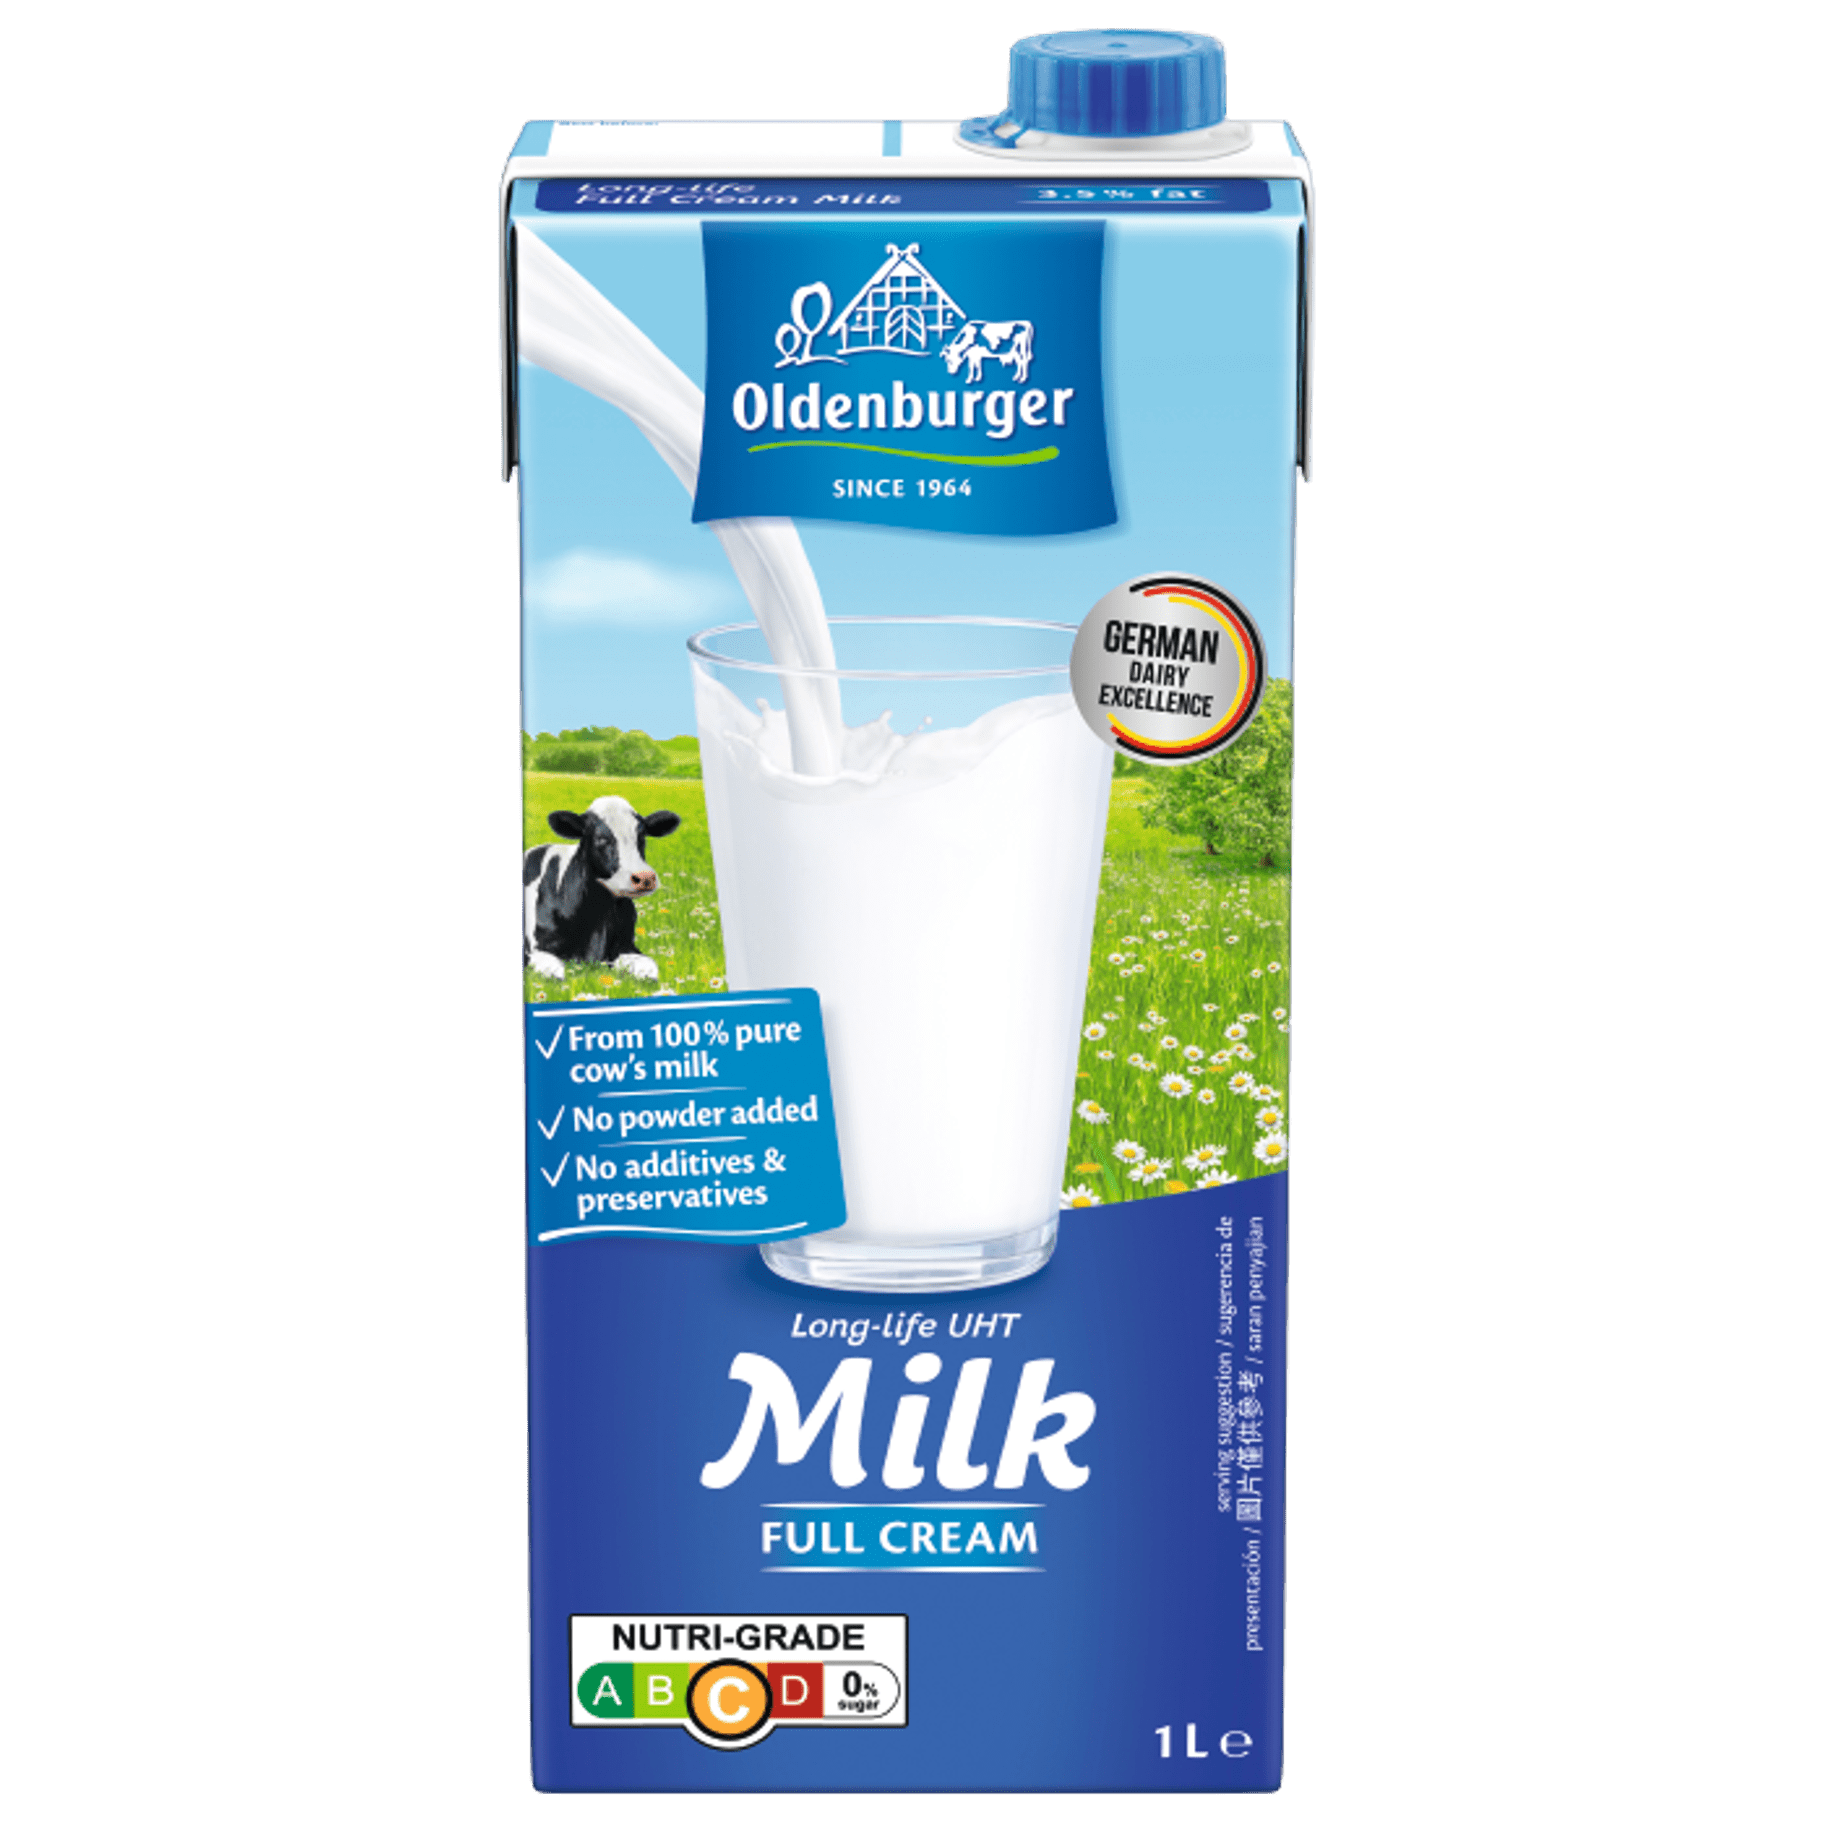 Sữa tươi tiệt trùng nguyên kem hiệu Oldenburger (3.5% béo), 1l